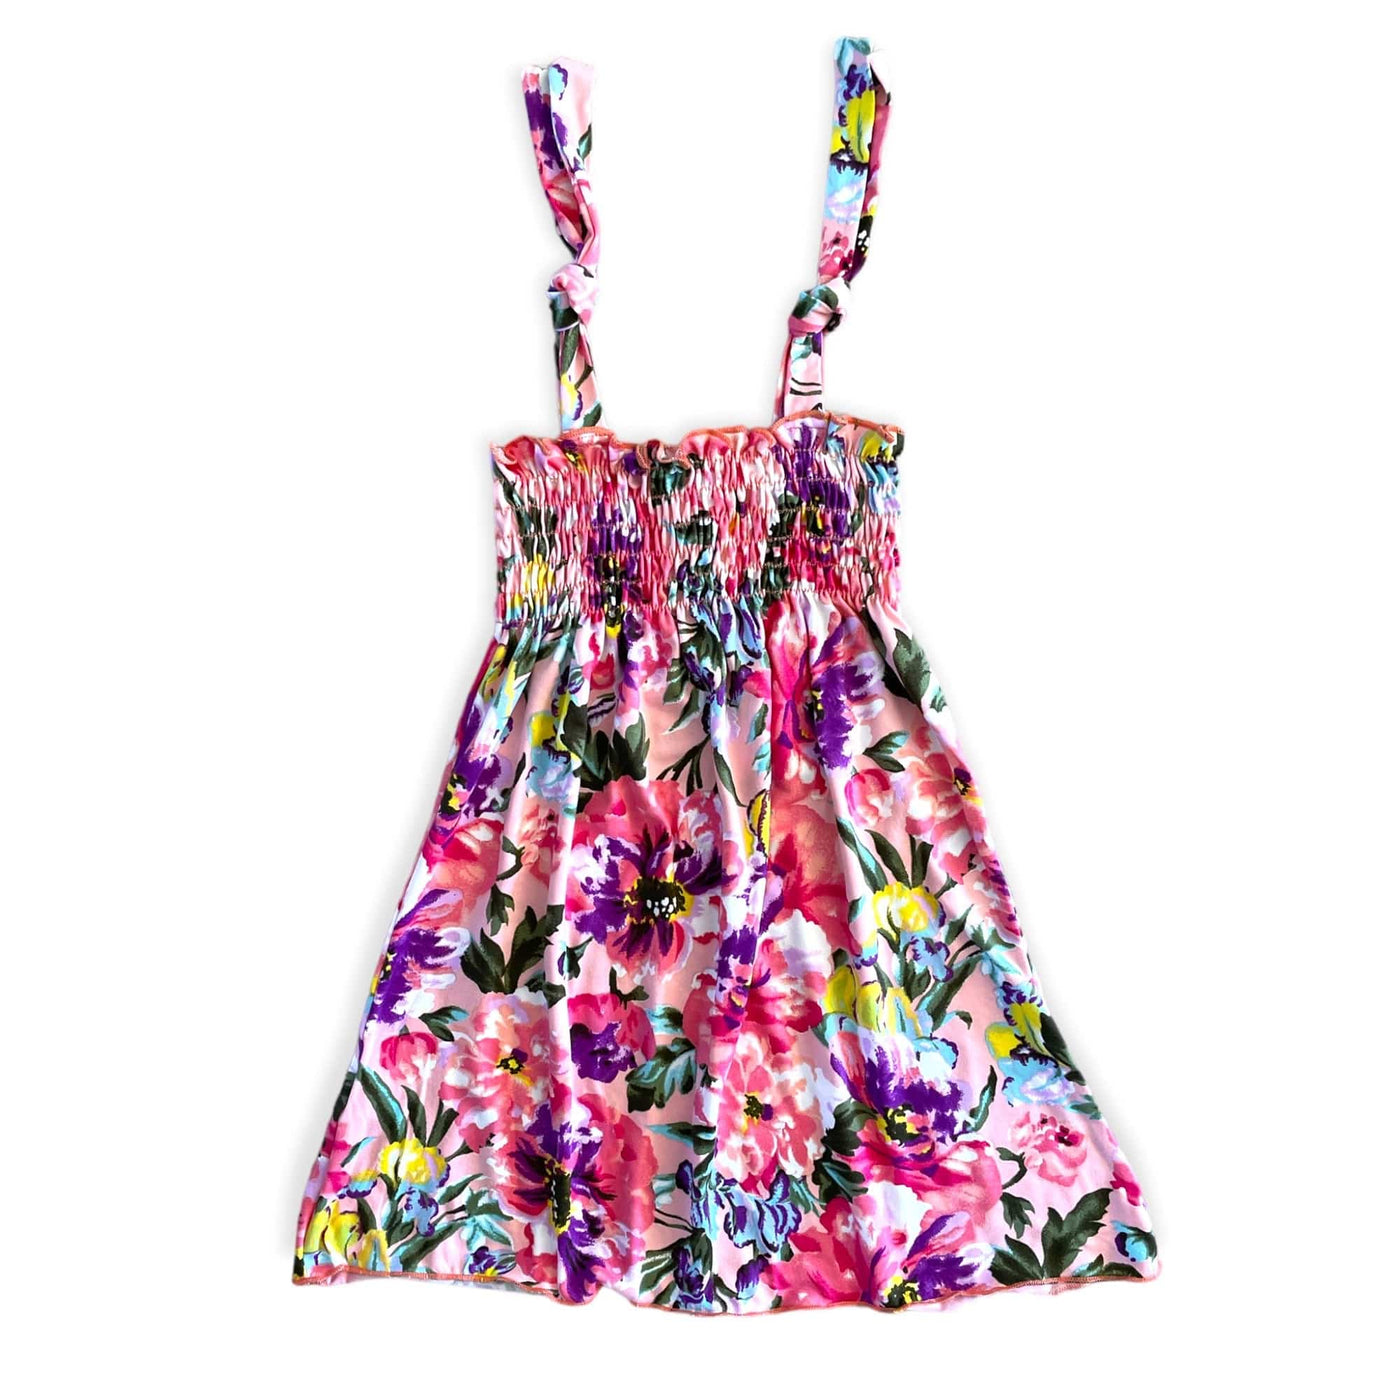 Best Day Ever Kids Baby & Toddler Dresses La Vie En Rose Smocked Dress - Pink buy online boutique kids clothing